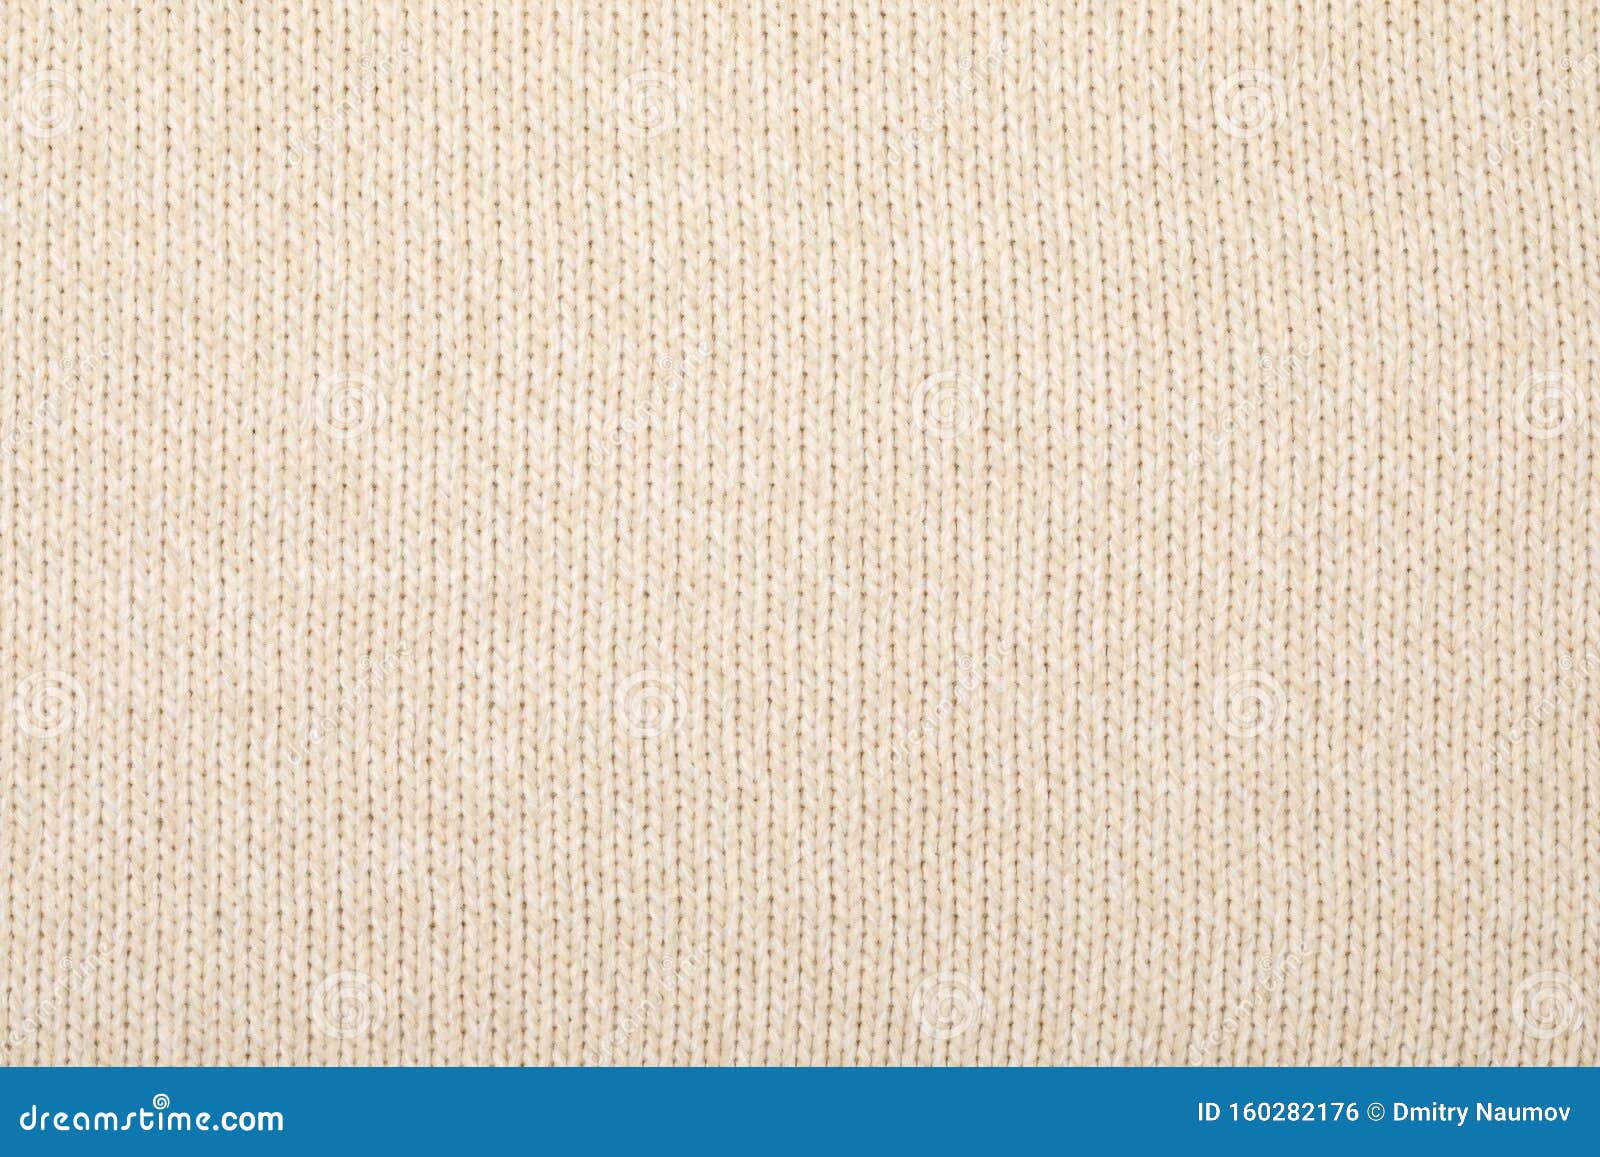 Beige Melange Knitting Fabric Textured Background Stock Photo